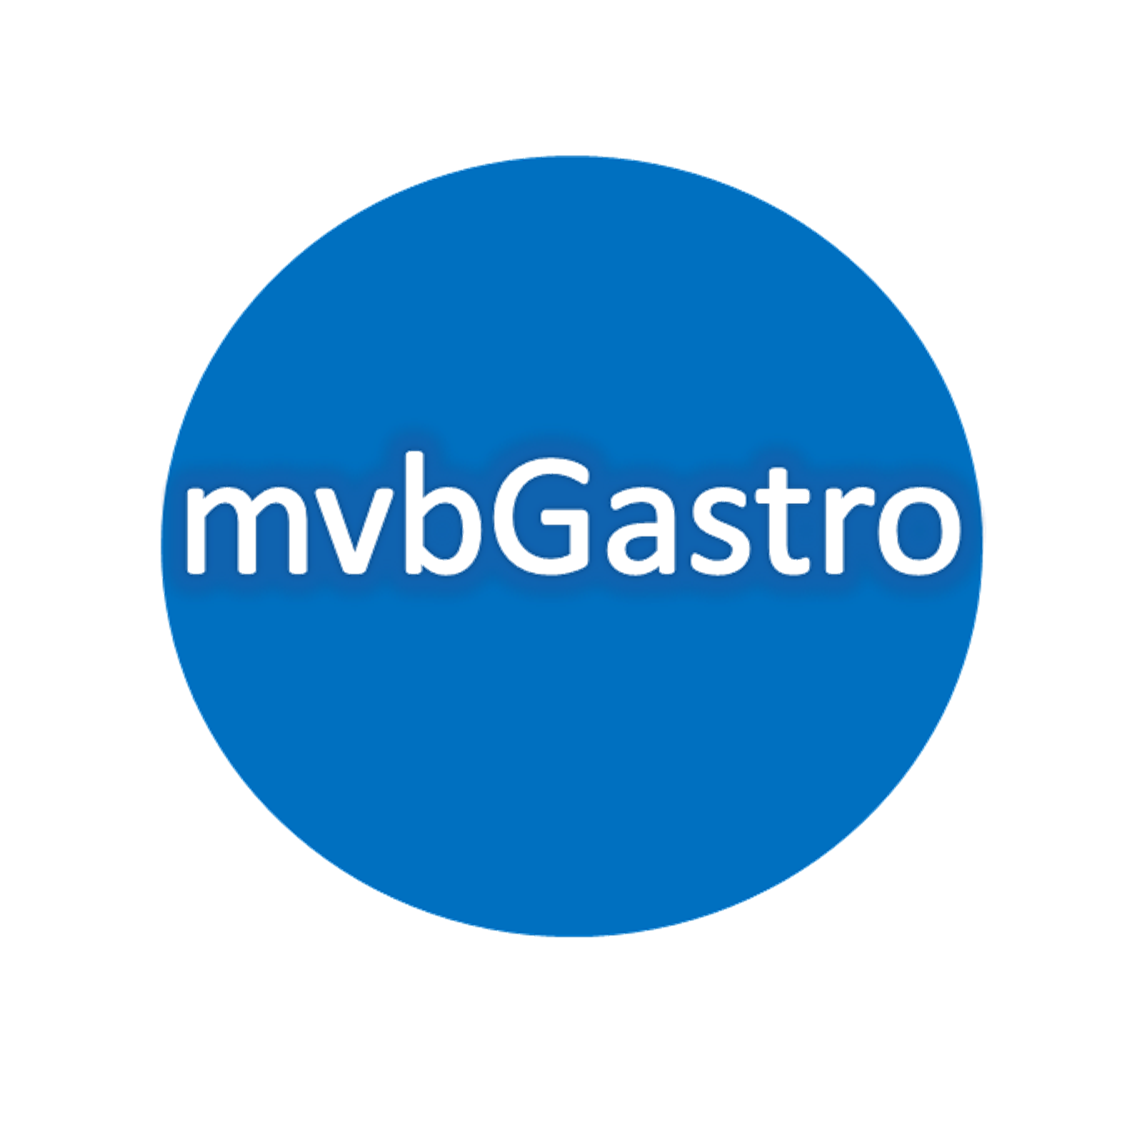 mvbgastro Qualitäts Gastro Geräte zu angenehmen Preisen und schnell geliefert